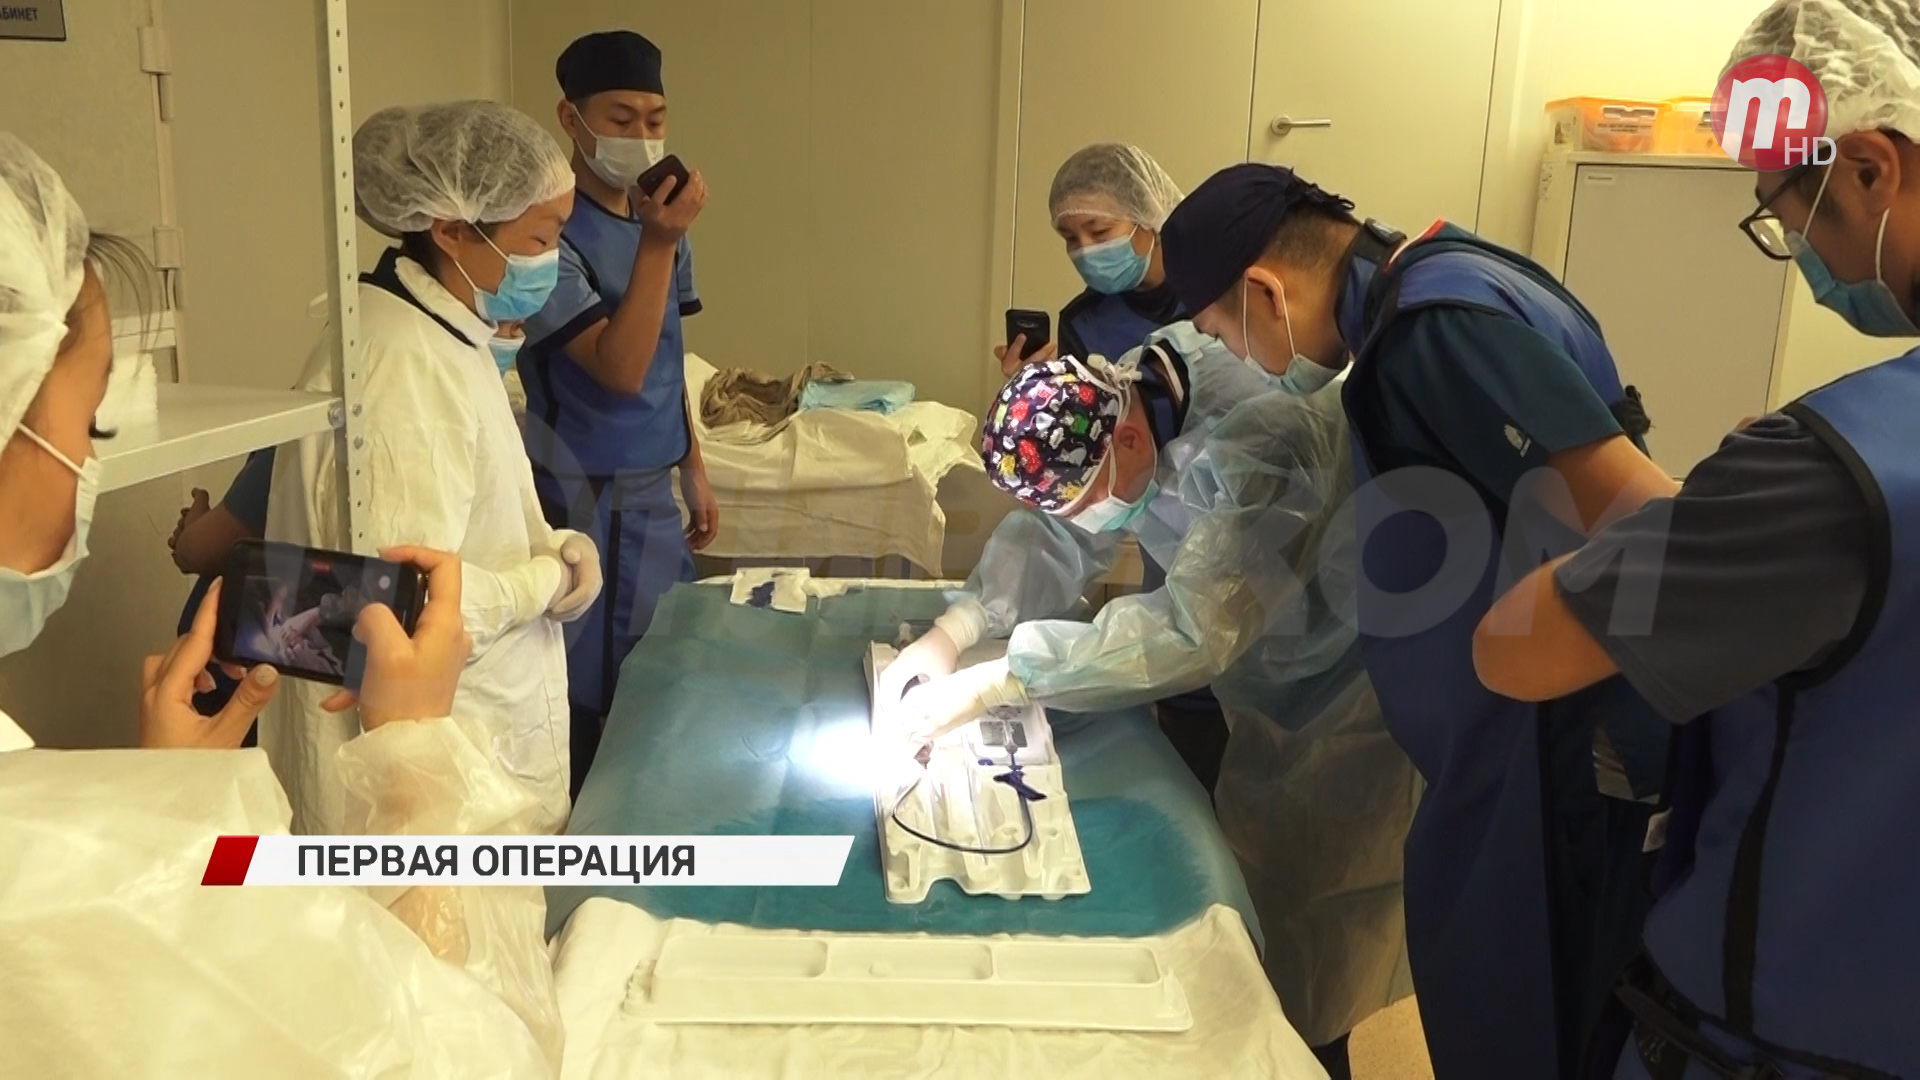 Инновационную операцию по лечению аортального стеноза в Бурятии провели впервые